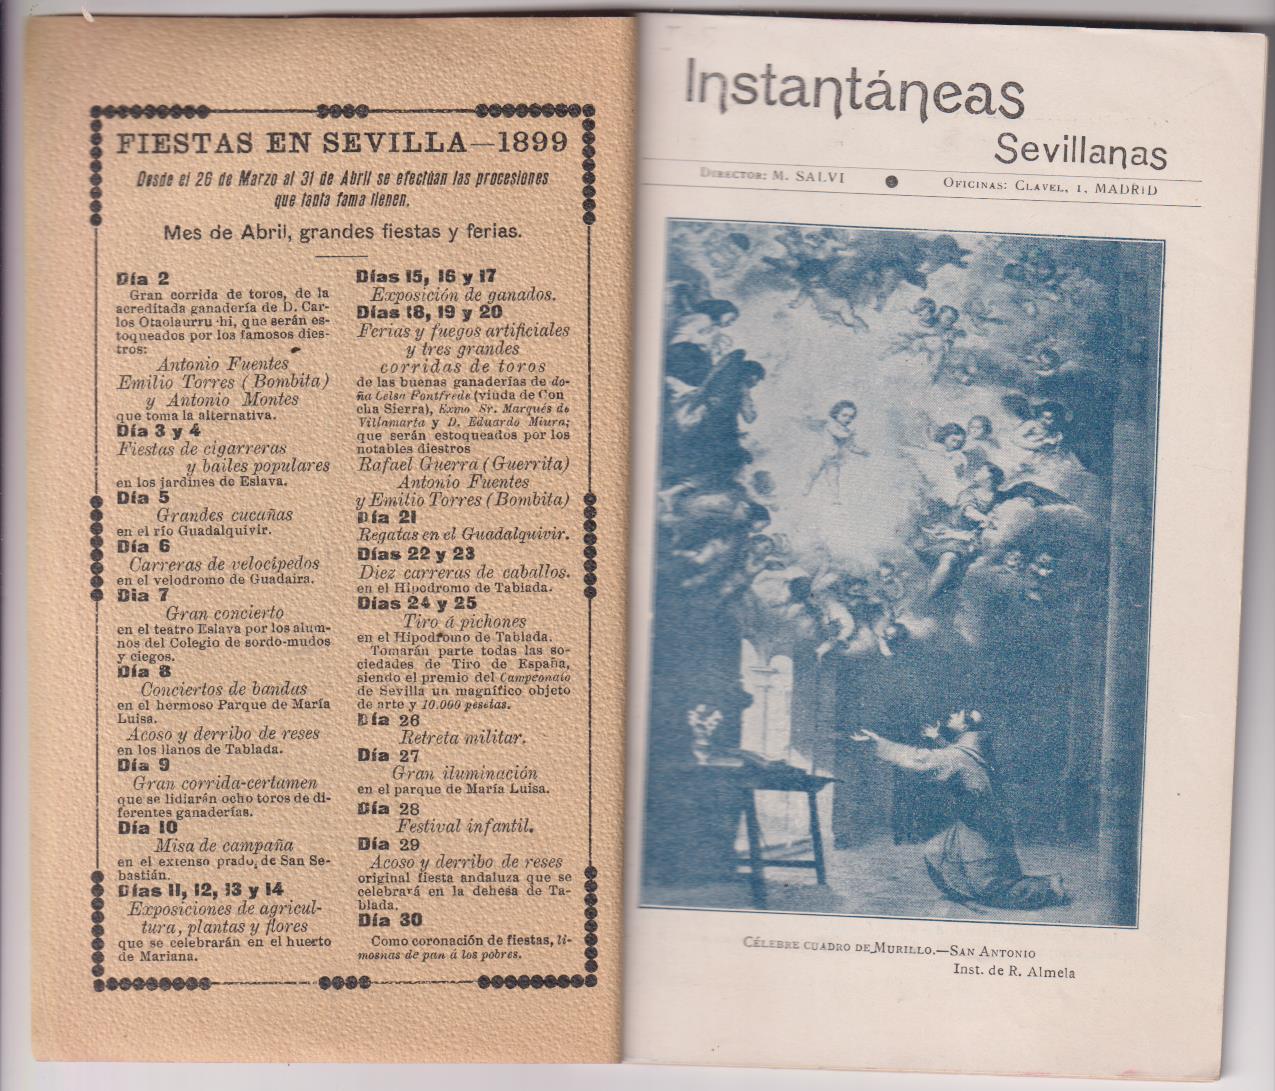 Instantáneas Sevillanas. Fiestas en Sevilla en 1899. Lujosa Impresión. MUY RARO